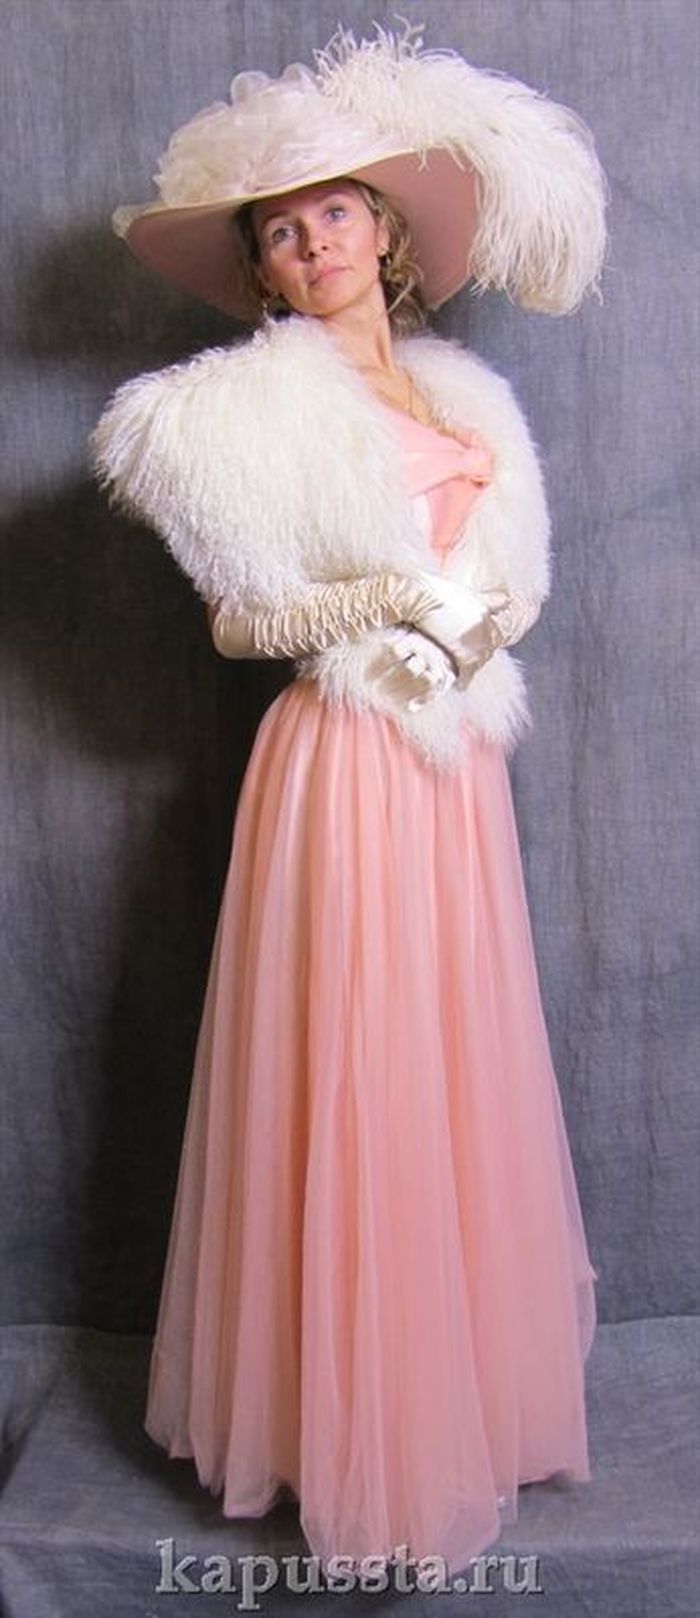 Платье розовое с горжеткой и шляпкой